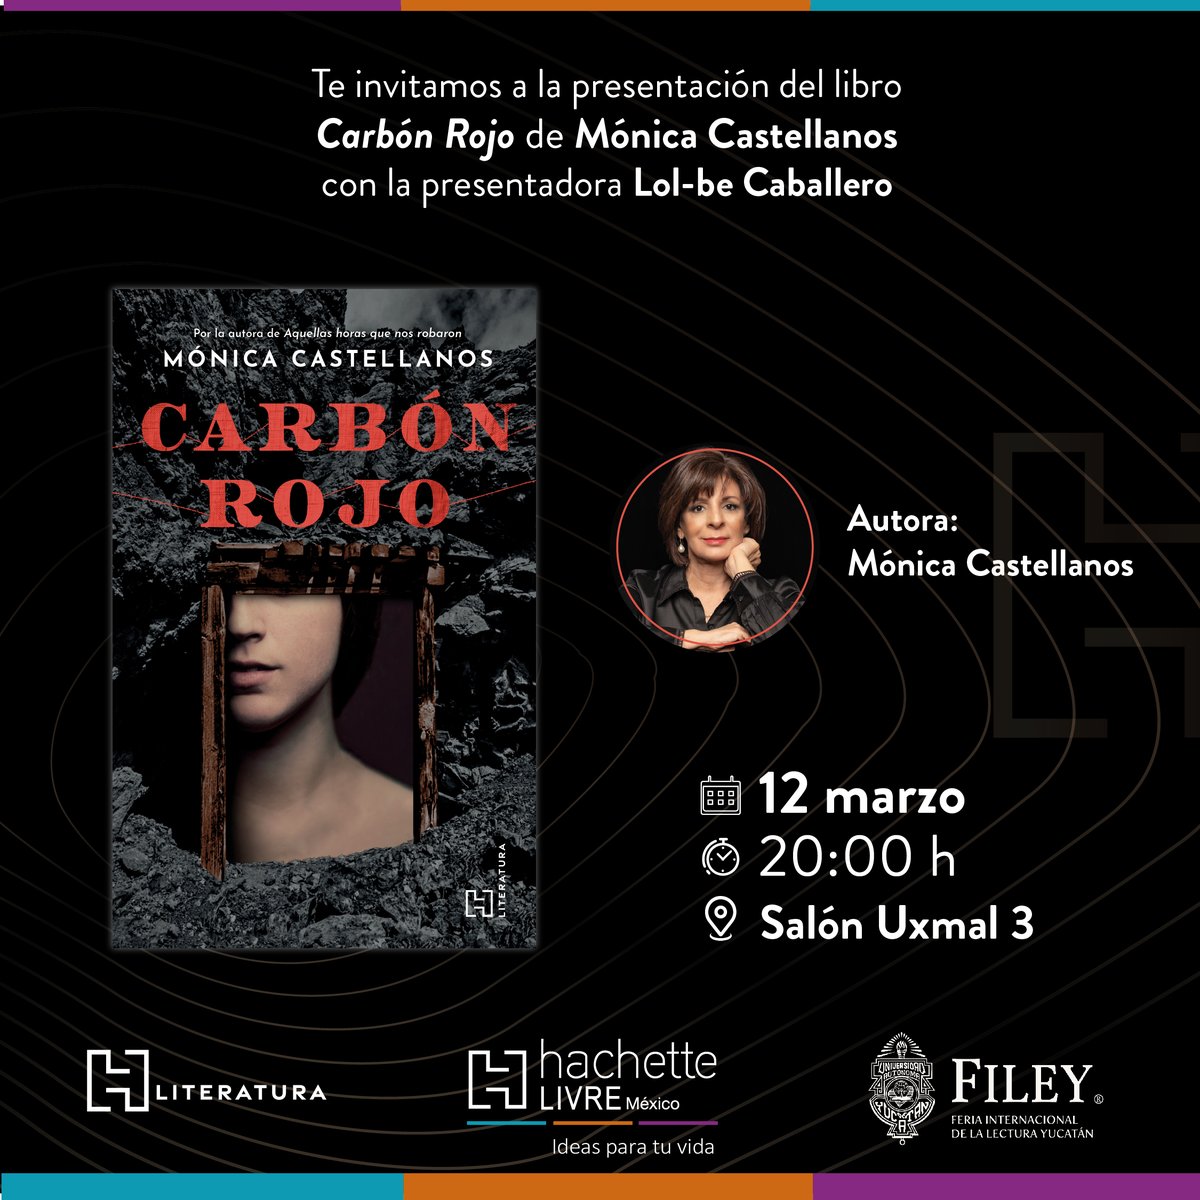 Dentro de la programación de @la_filey estará #monicacastellanos presentando #carbónrojo en el Salón Uxmal 3 el 12 de marzo. ¡Les esperamos allá! 

#hliteratura #literaturamexicana #autorasmexicanas